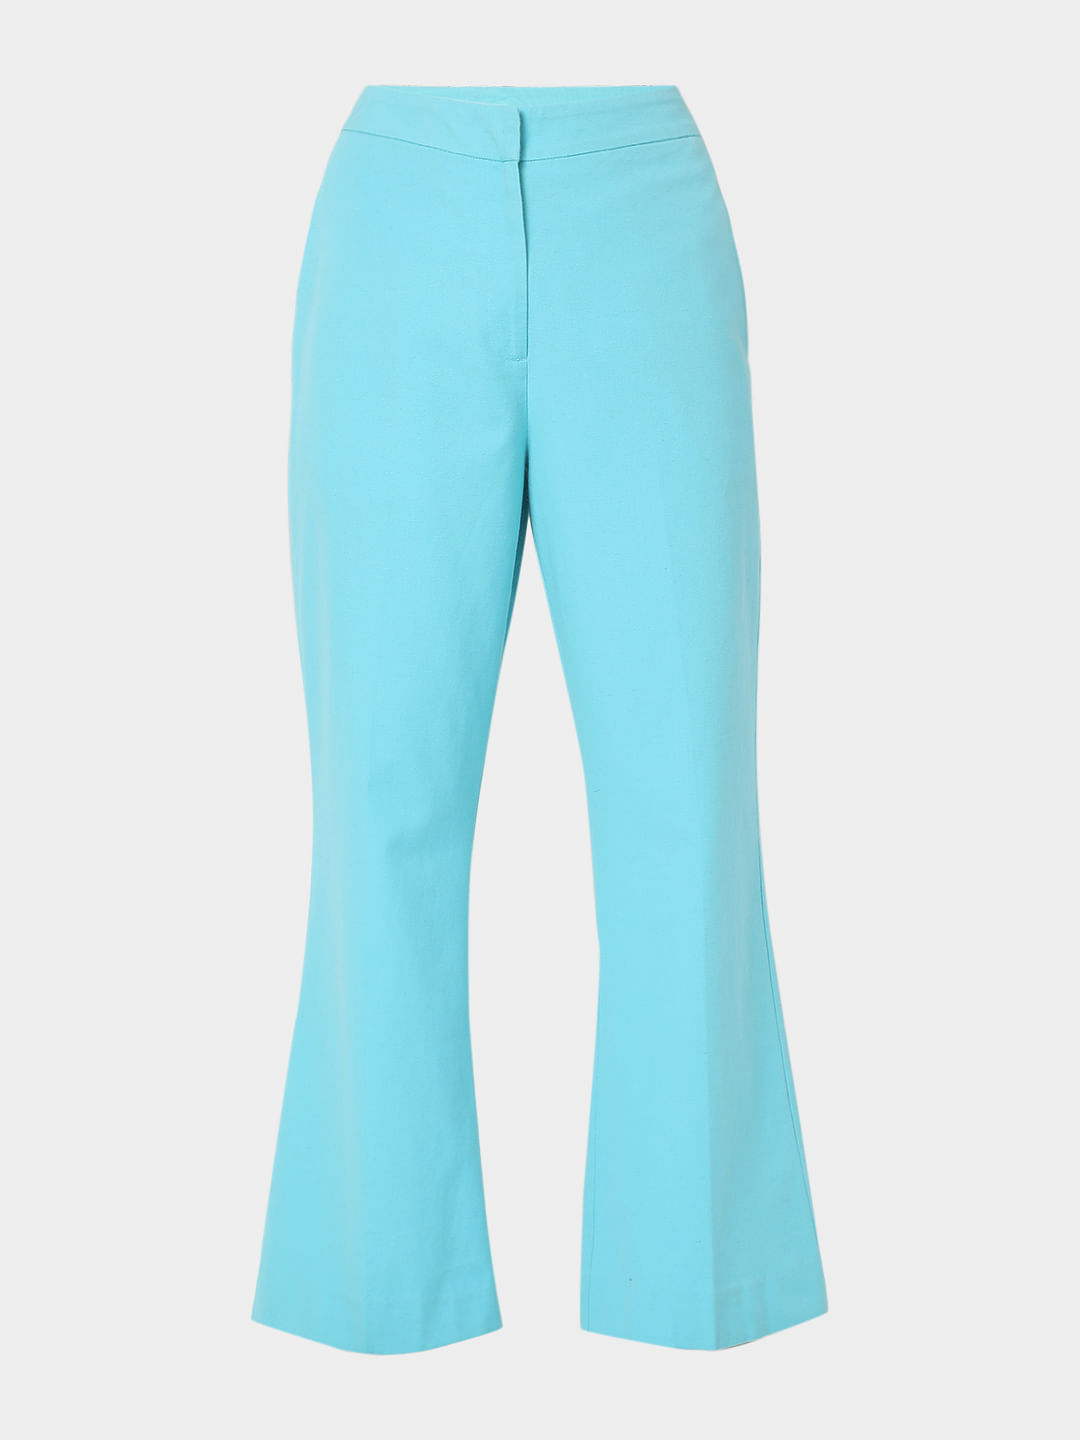 Long Sleeveless Dressy Bell Bottom Pants Suit Jumpsuit Romper - NT202 - KOH  KOH® Women's Clothing